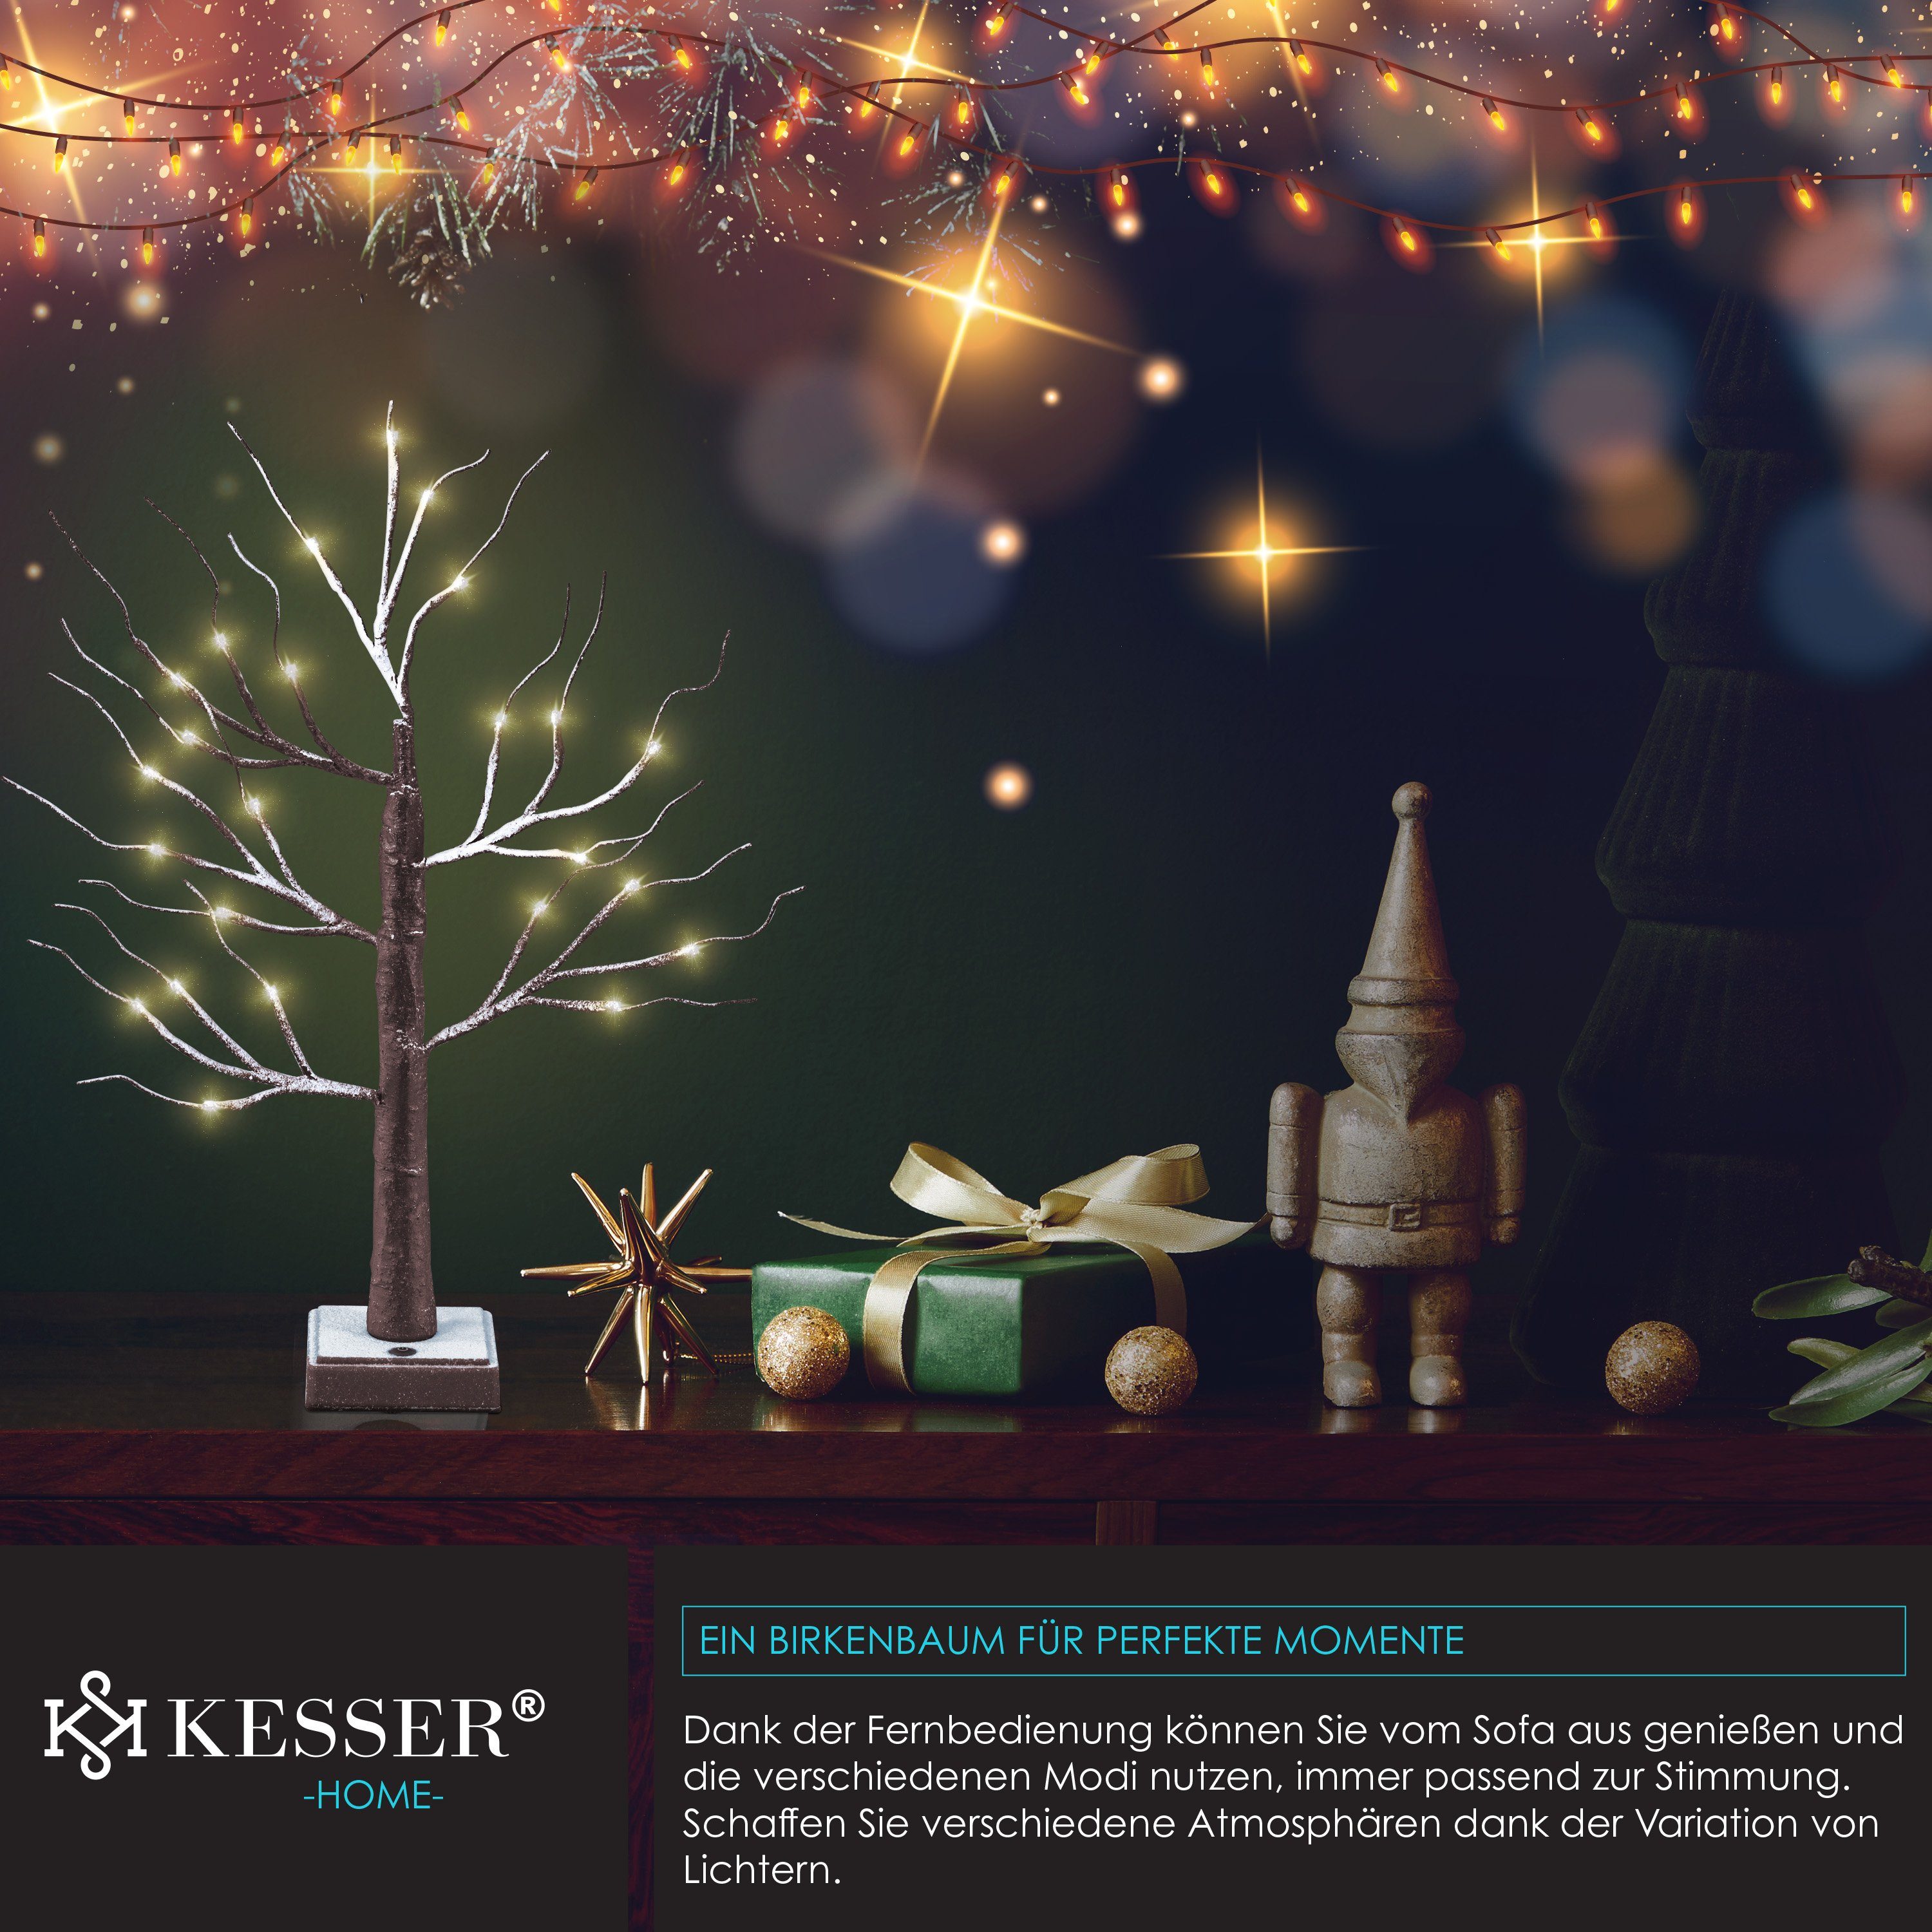 KESSER Weihnachtsfigur, Lichterbaum Birkenbaum Timer 60cm Mit Modus LED Fernbedienung braun